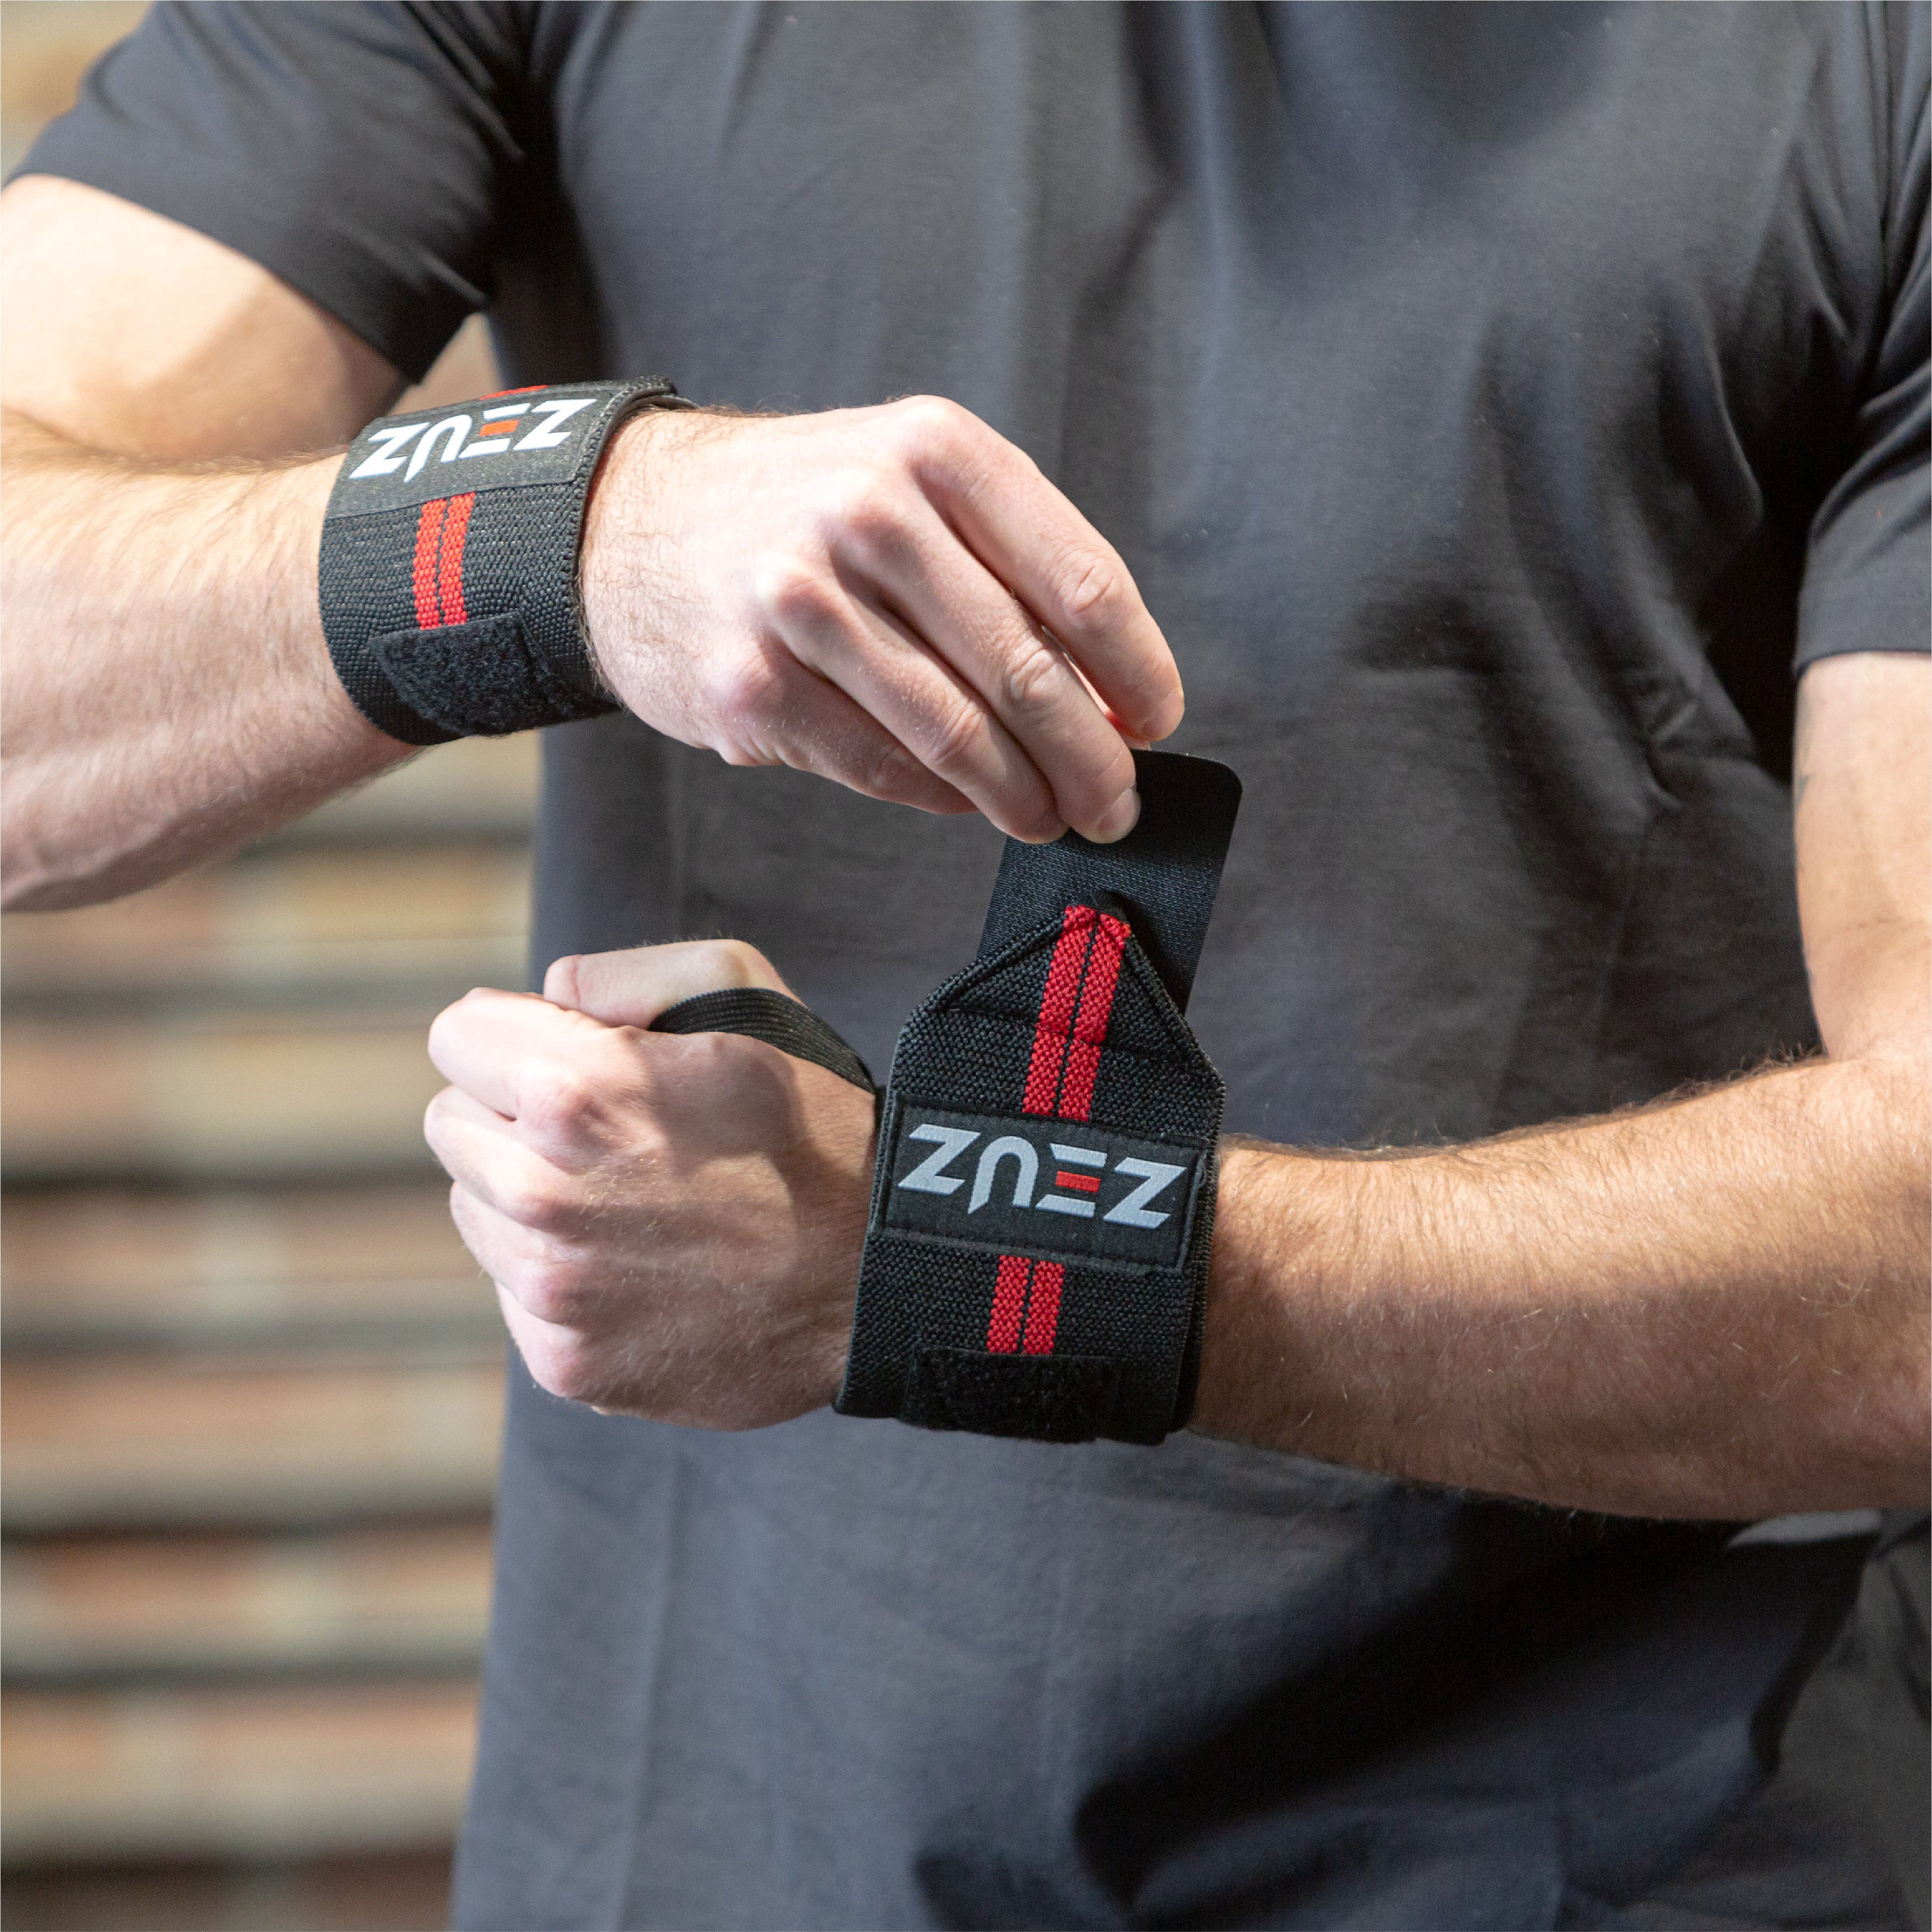 ZEUZ 1 Piece Fitness & CrossFit Wristband - Black-red